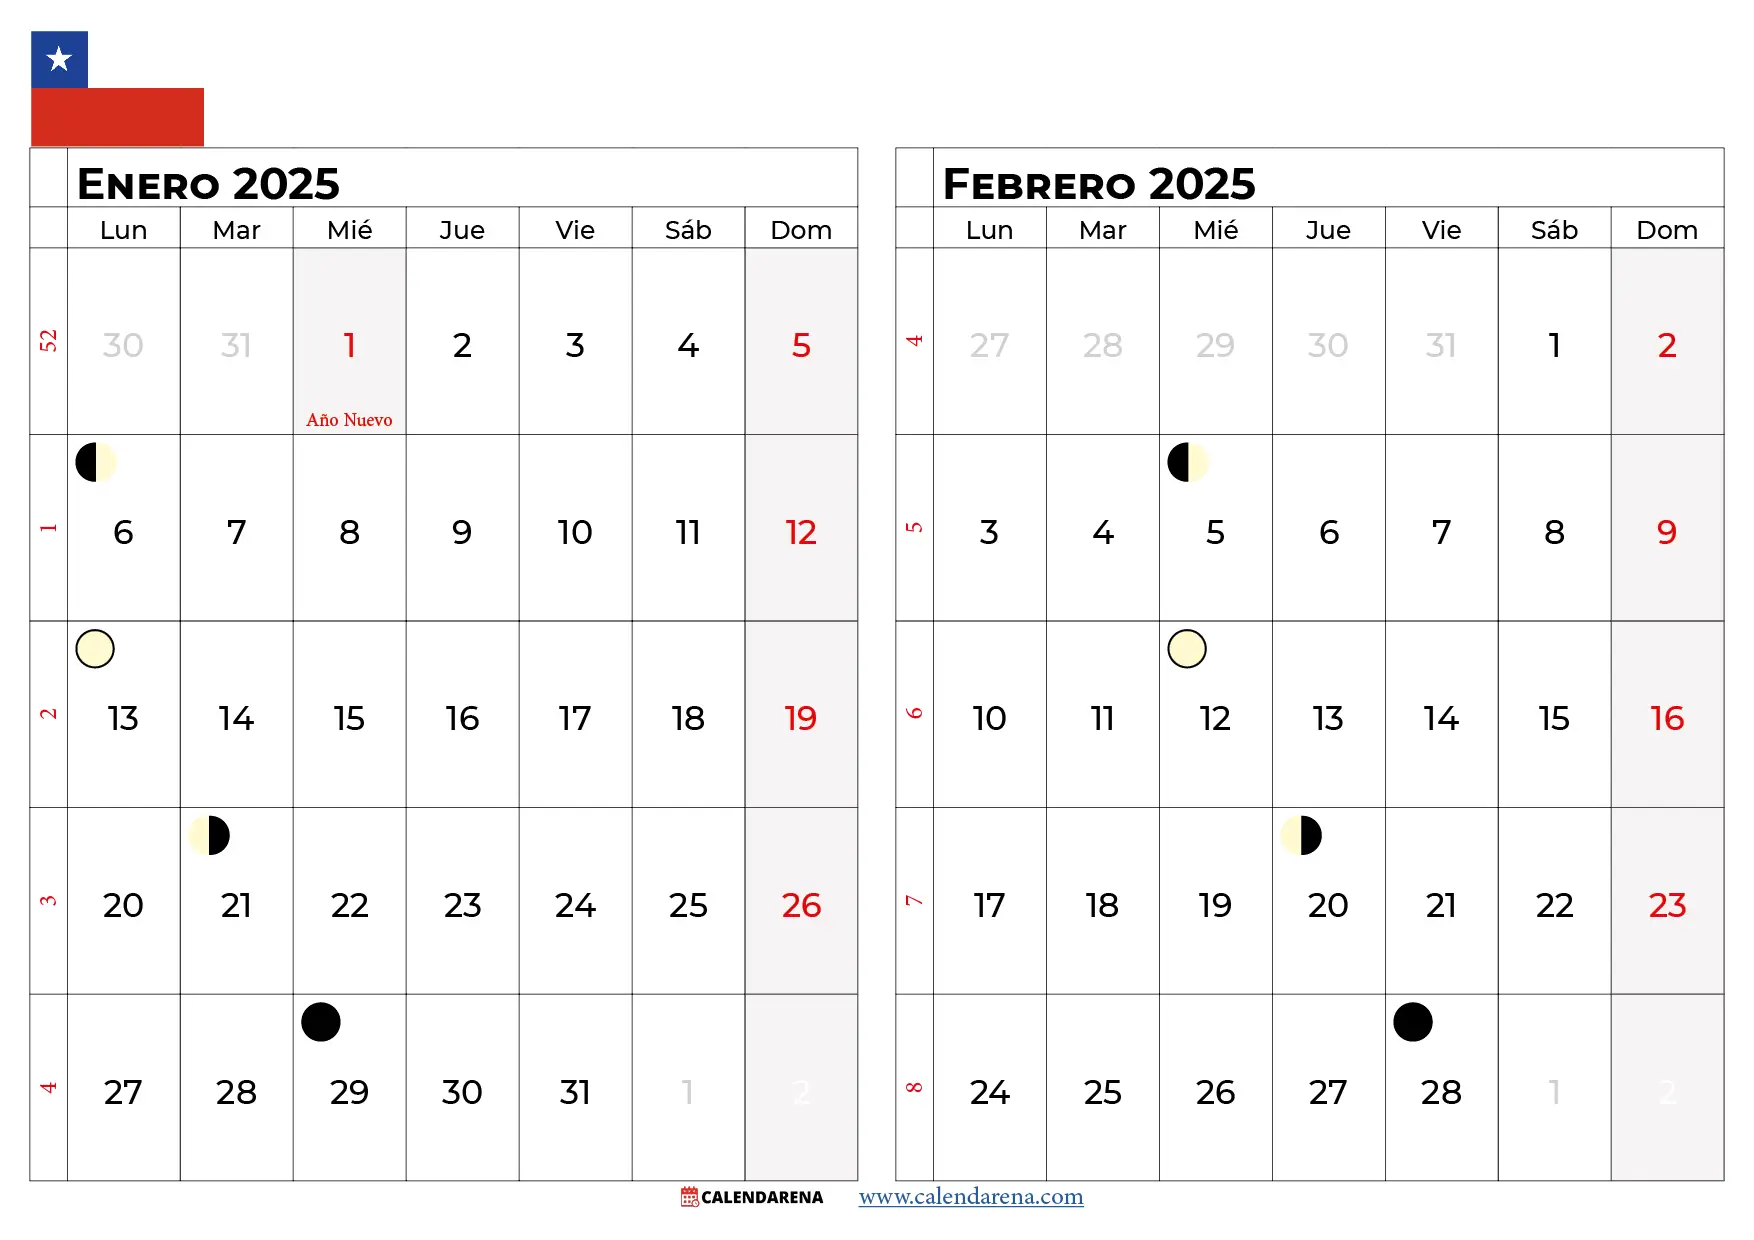 Calendario Enero y Febrero 2025 chile